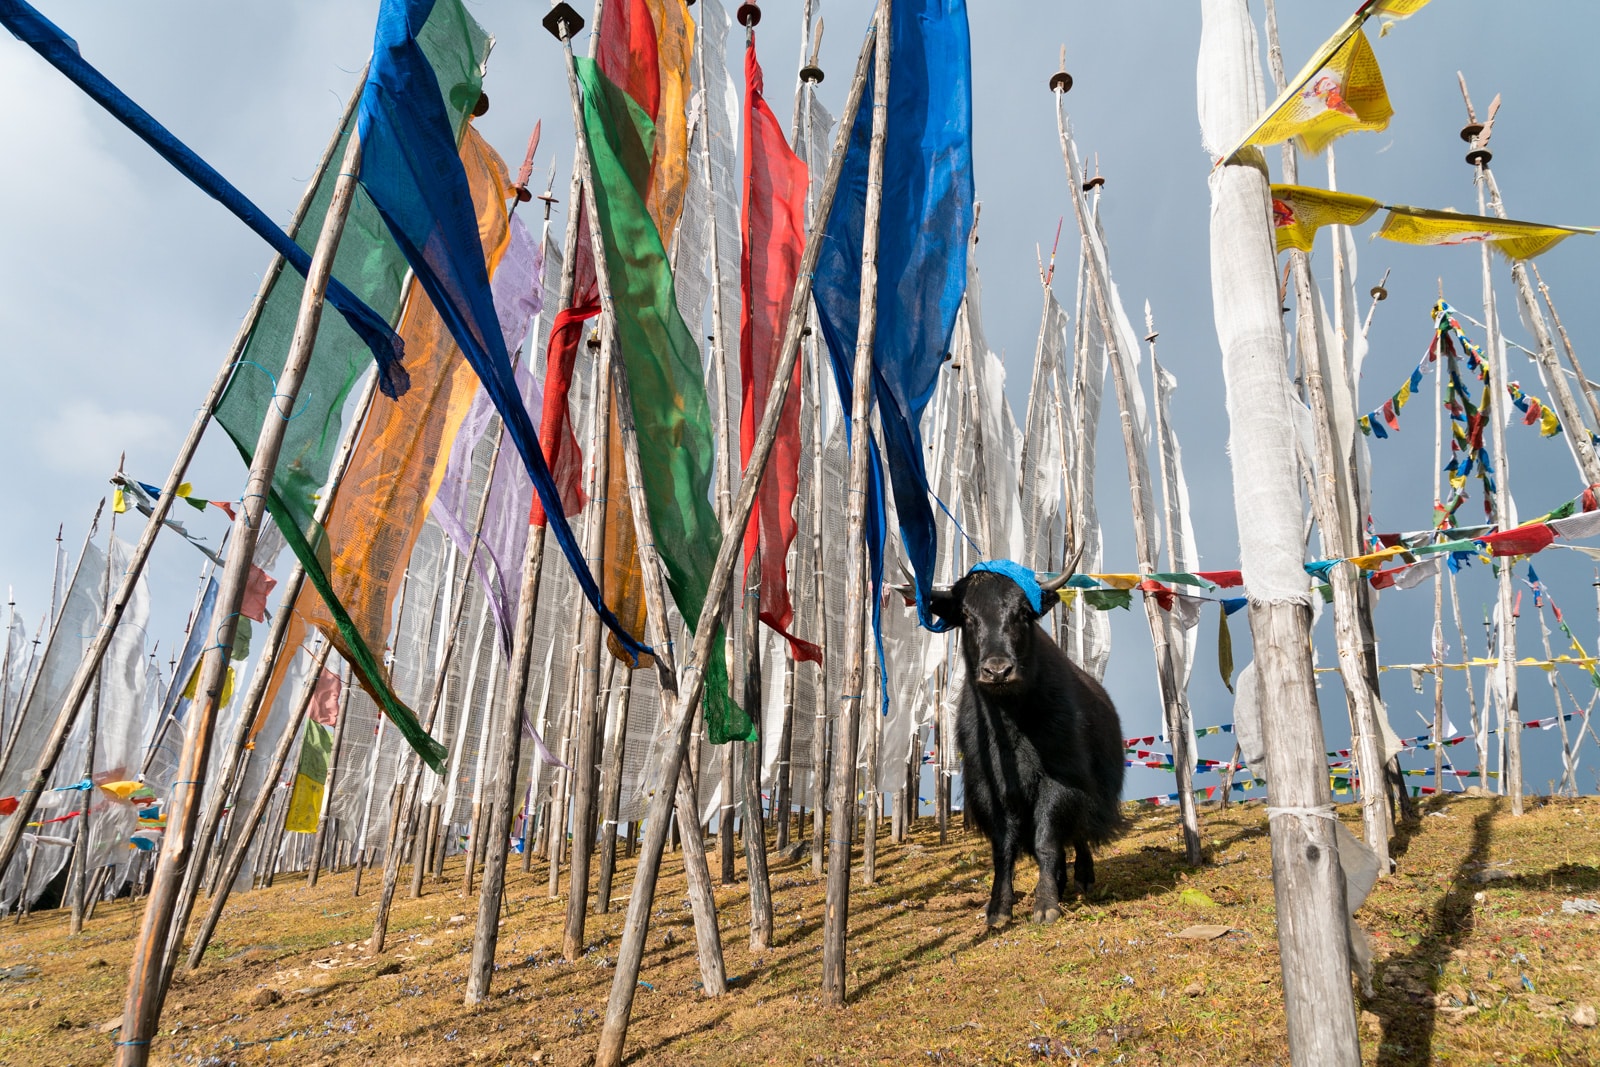 A yak standing between prayer flags